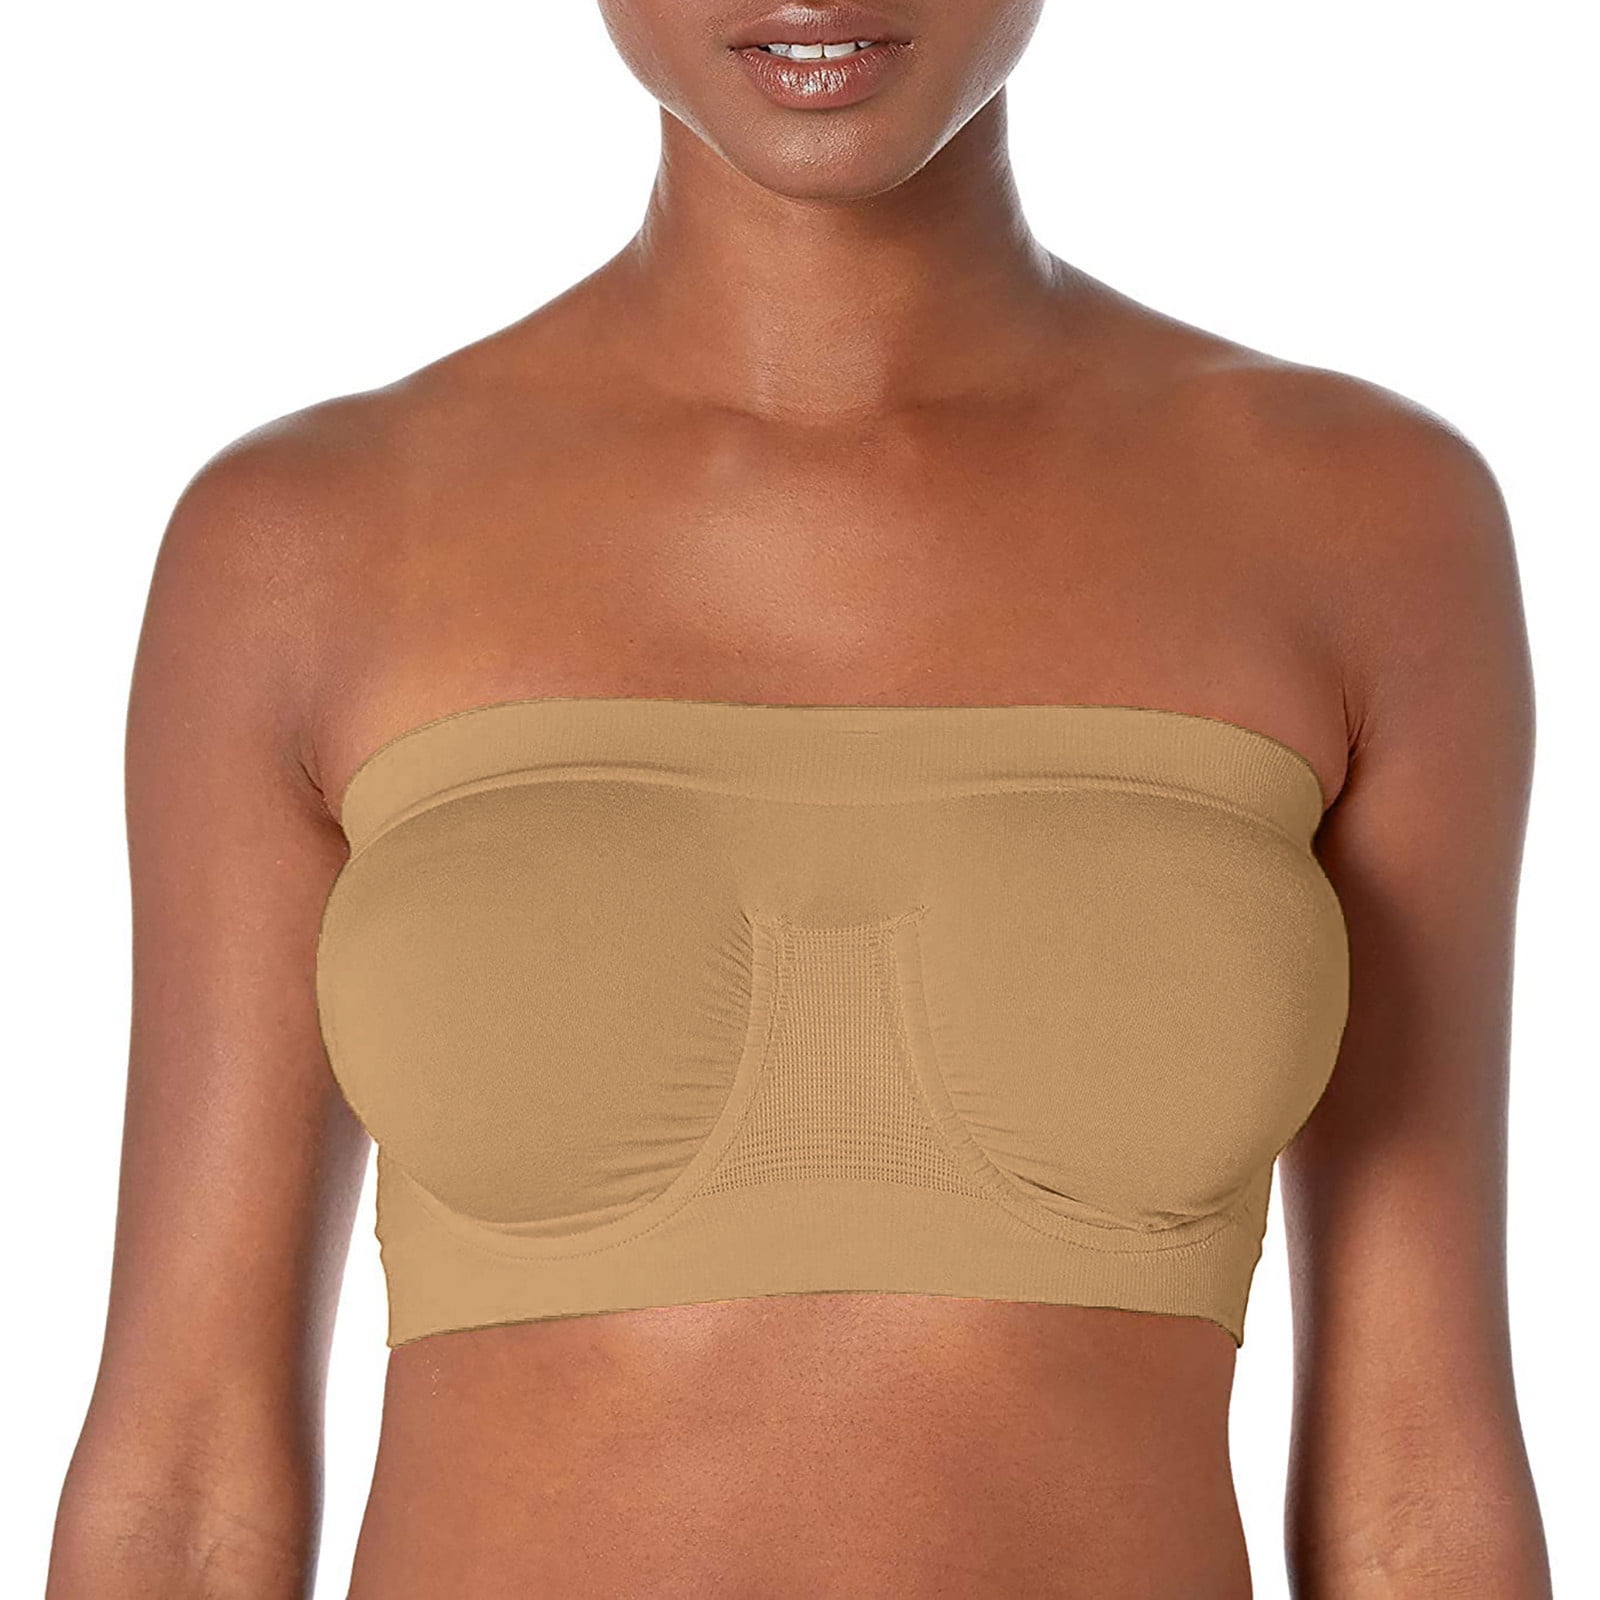 Seamless high quality tube bra strapless wireless bra removable